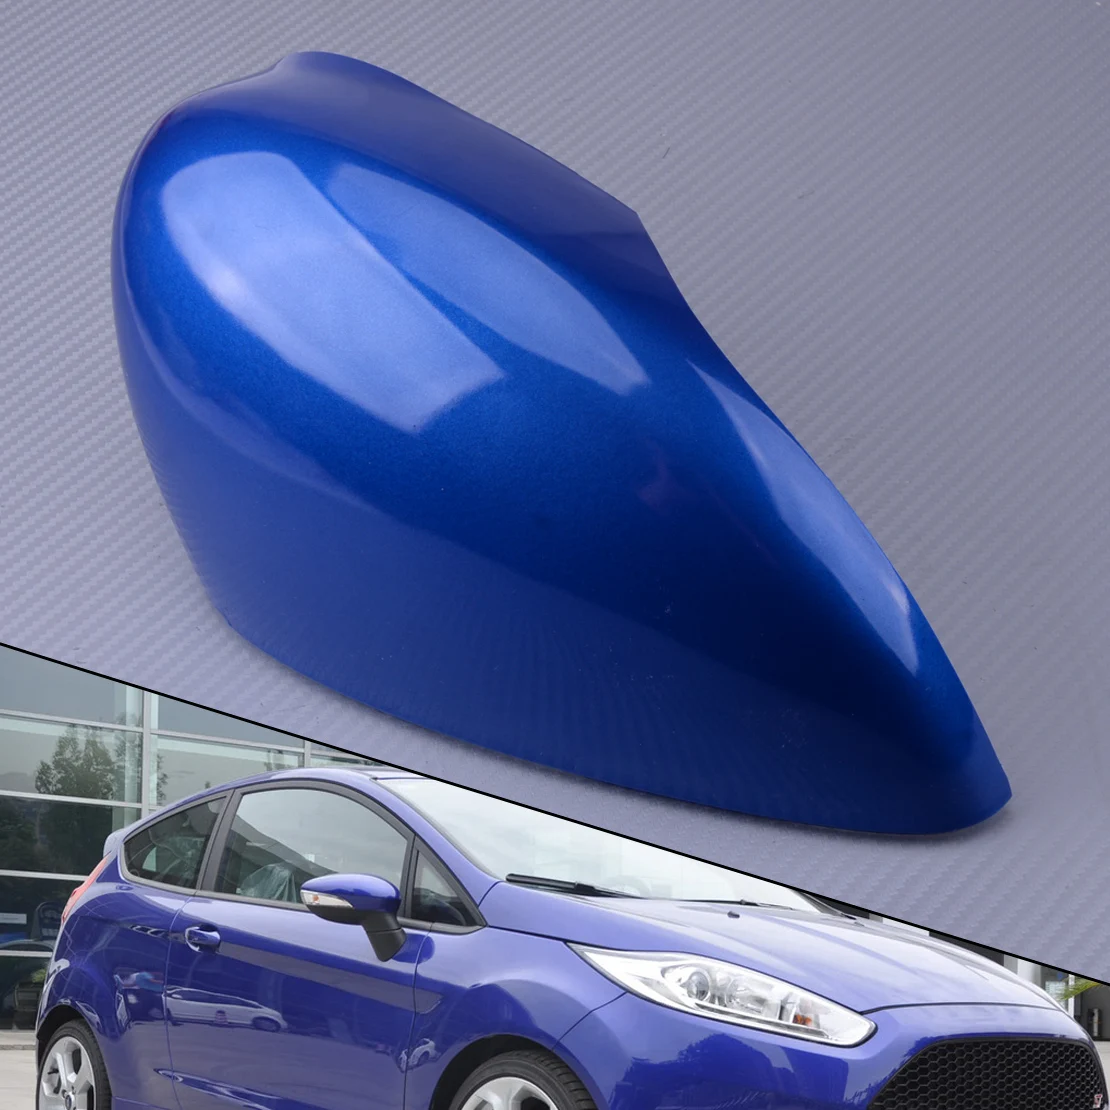 Rechten Flügel Tür Rück Seite Spiegel Abdeckung Kappe ABS Blau Fit für Ford Fiesta MK7 2008-2014 2015 2016 2017